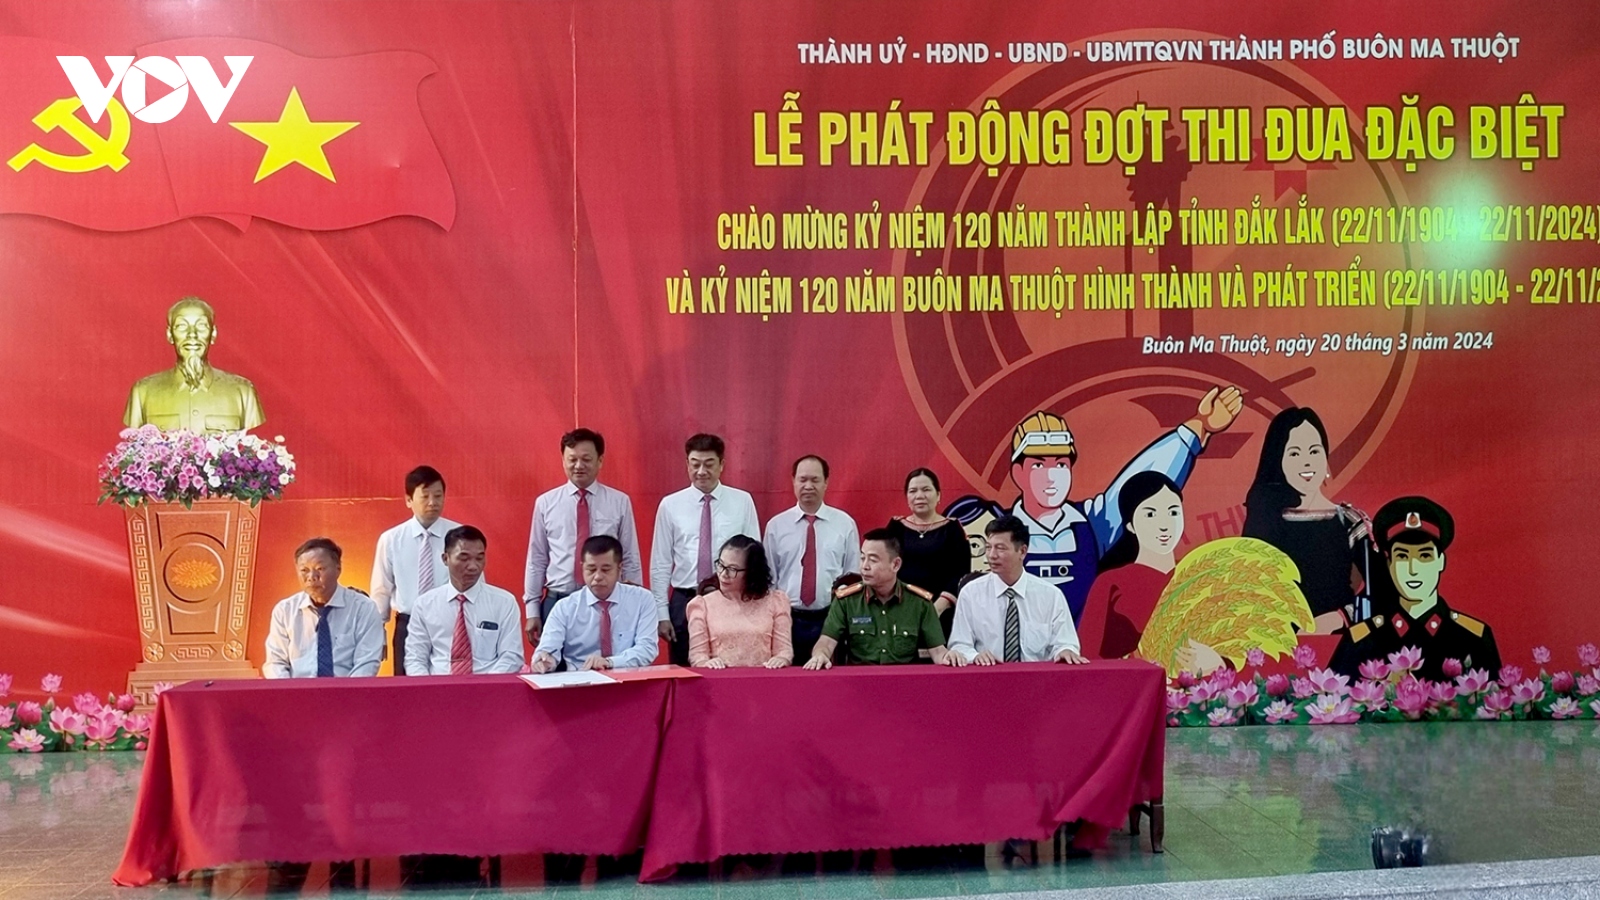 Phấn đấu hoàn thành các công trình trọng điểm dịp 120 năm thành lập tỉnh Đắk Lắk